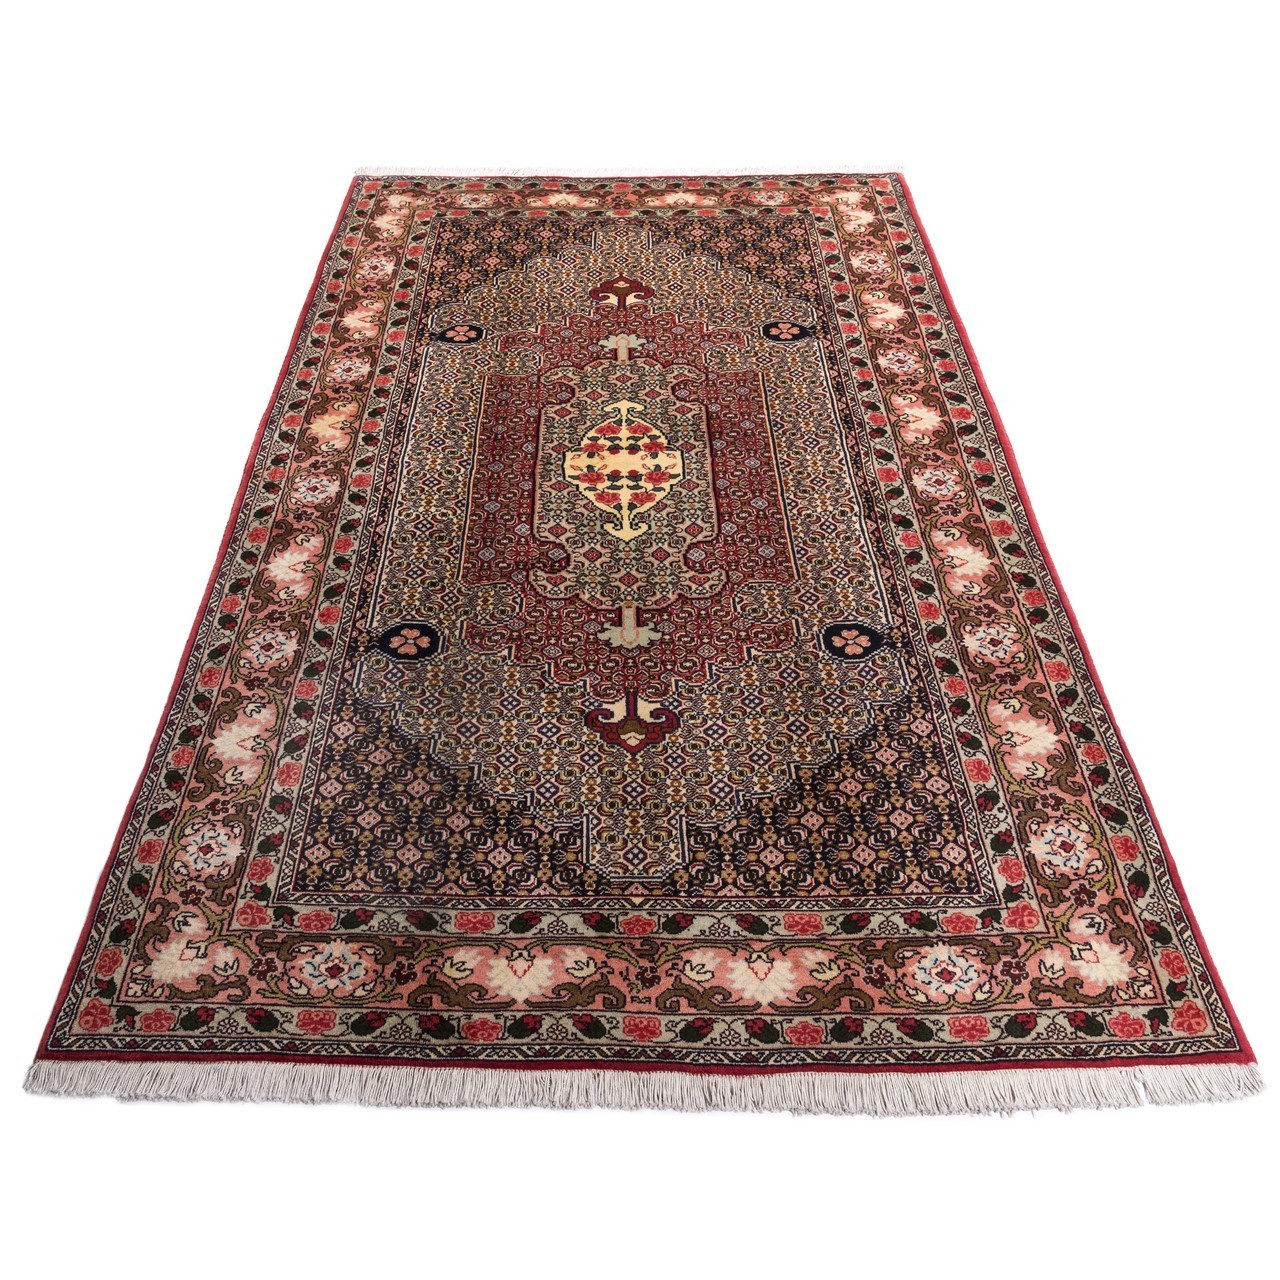 handgeknüpfter persischer Teppich. Ziffer 160017